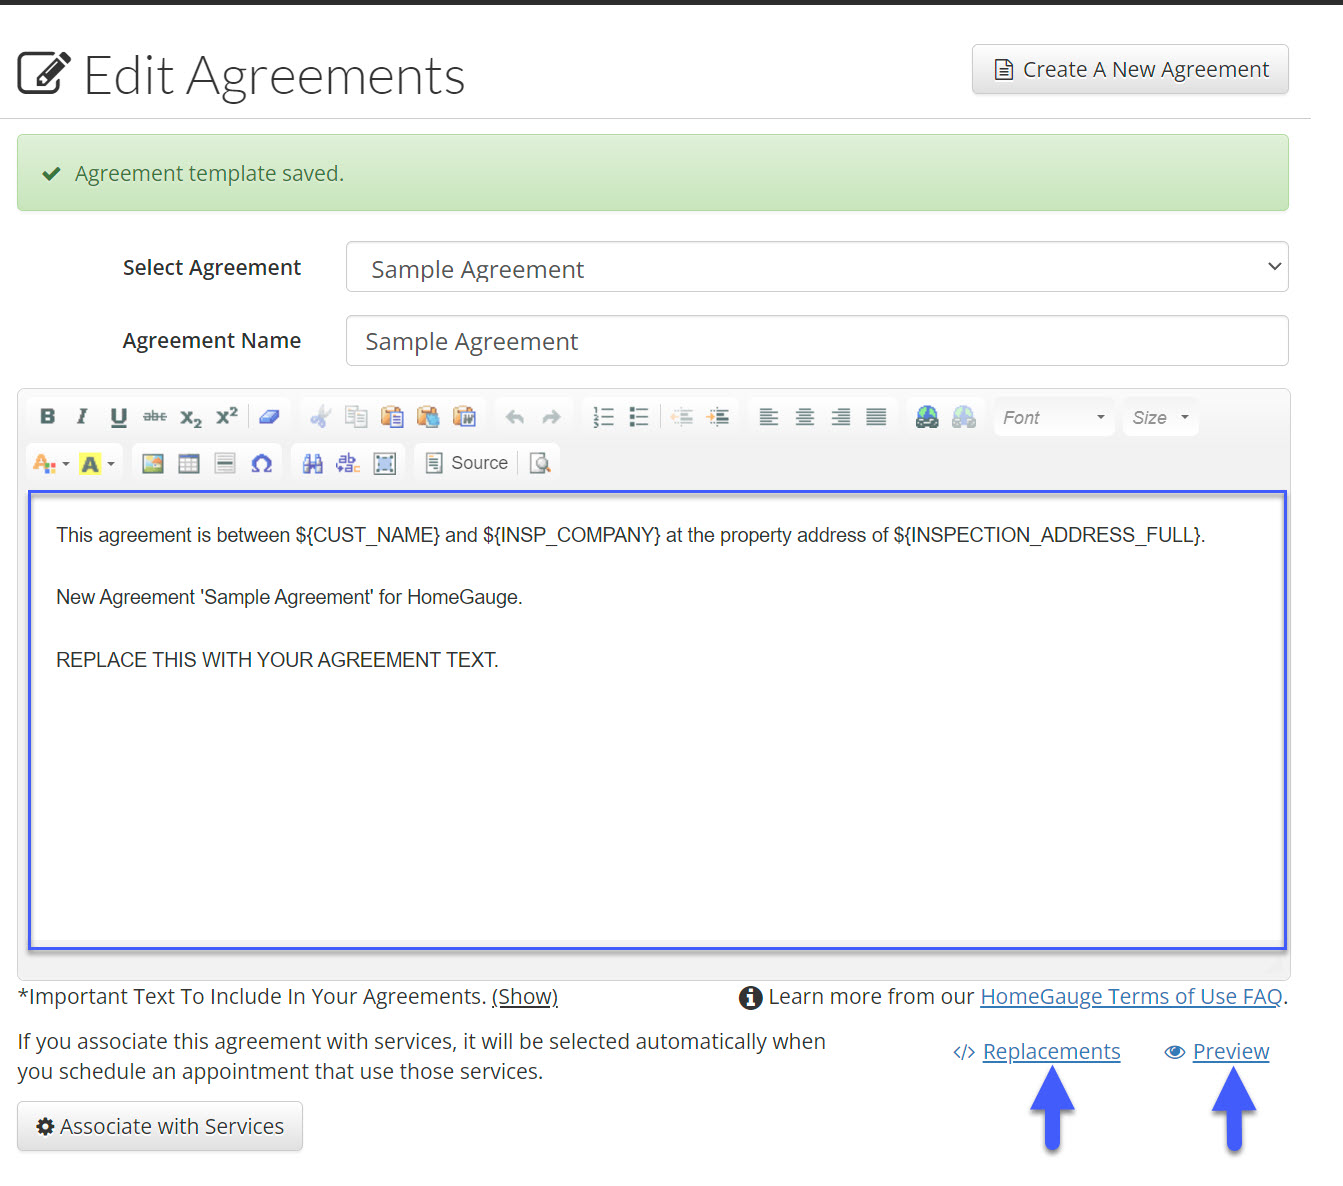 agreement template text box.jpg